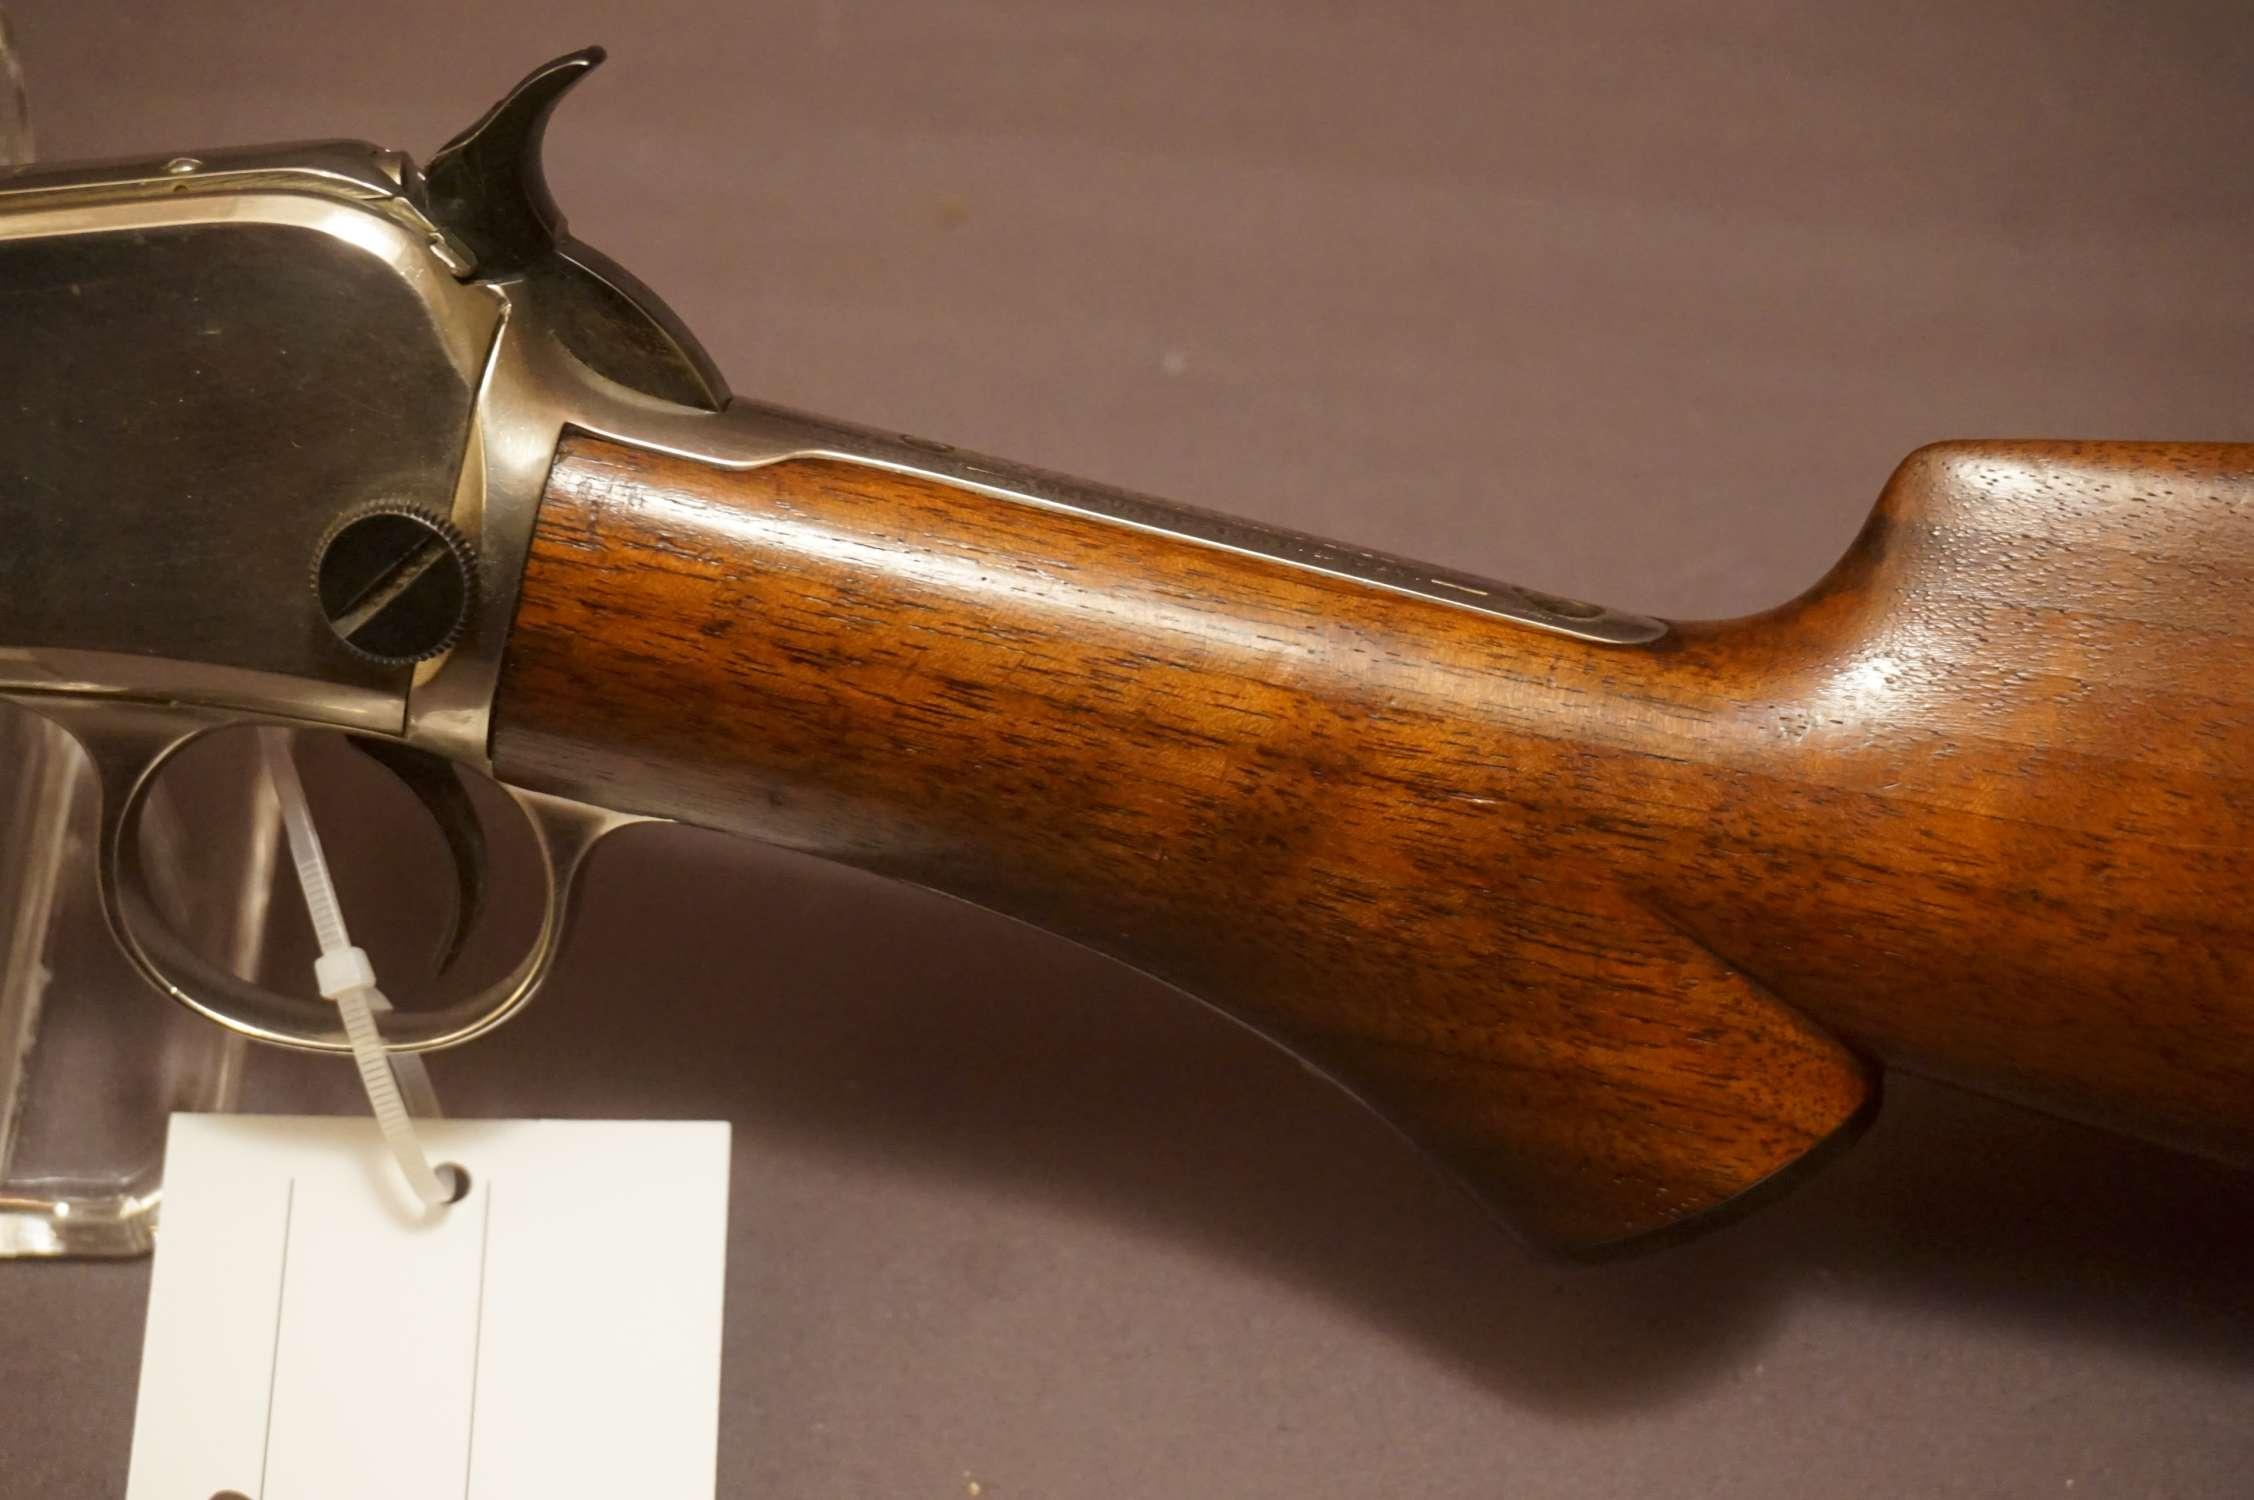 Winchester M. 1890 Third Issue .22Short Half Nickeled Pump Rifle